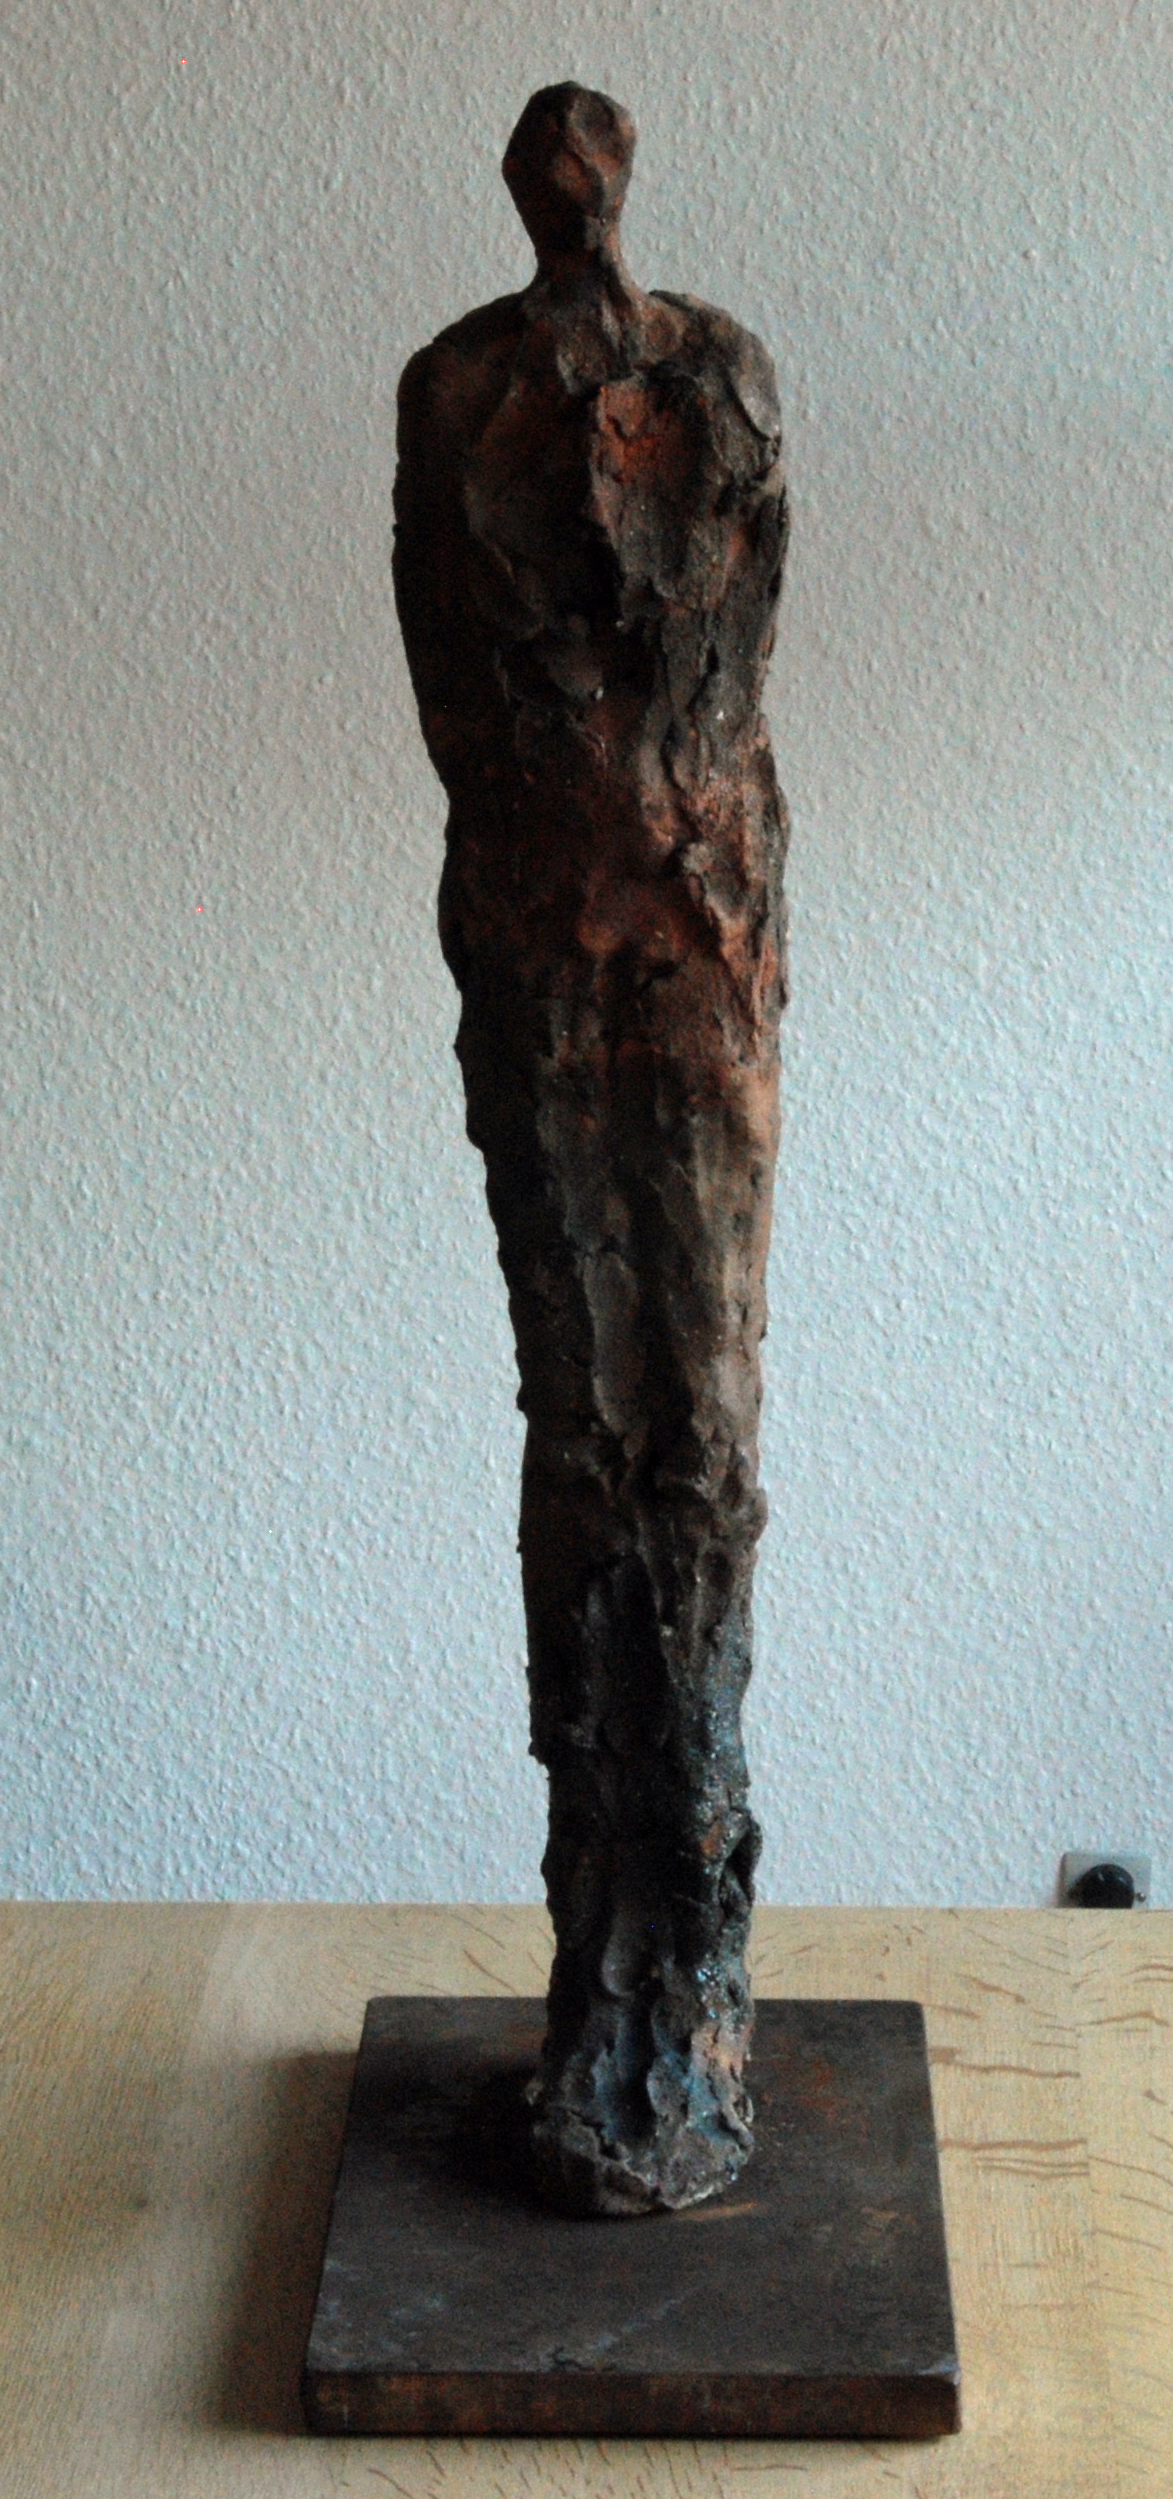 941-ole-videbaek-skulptur